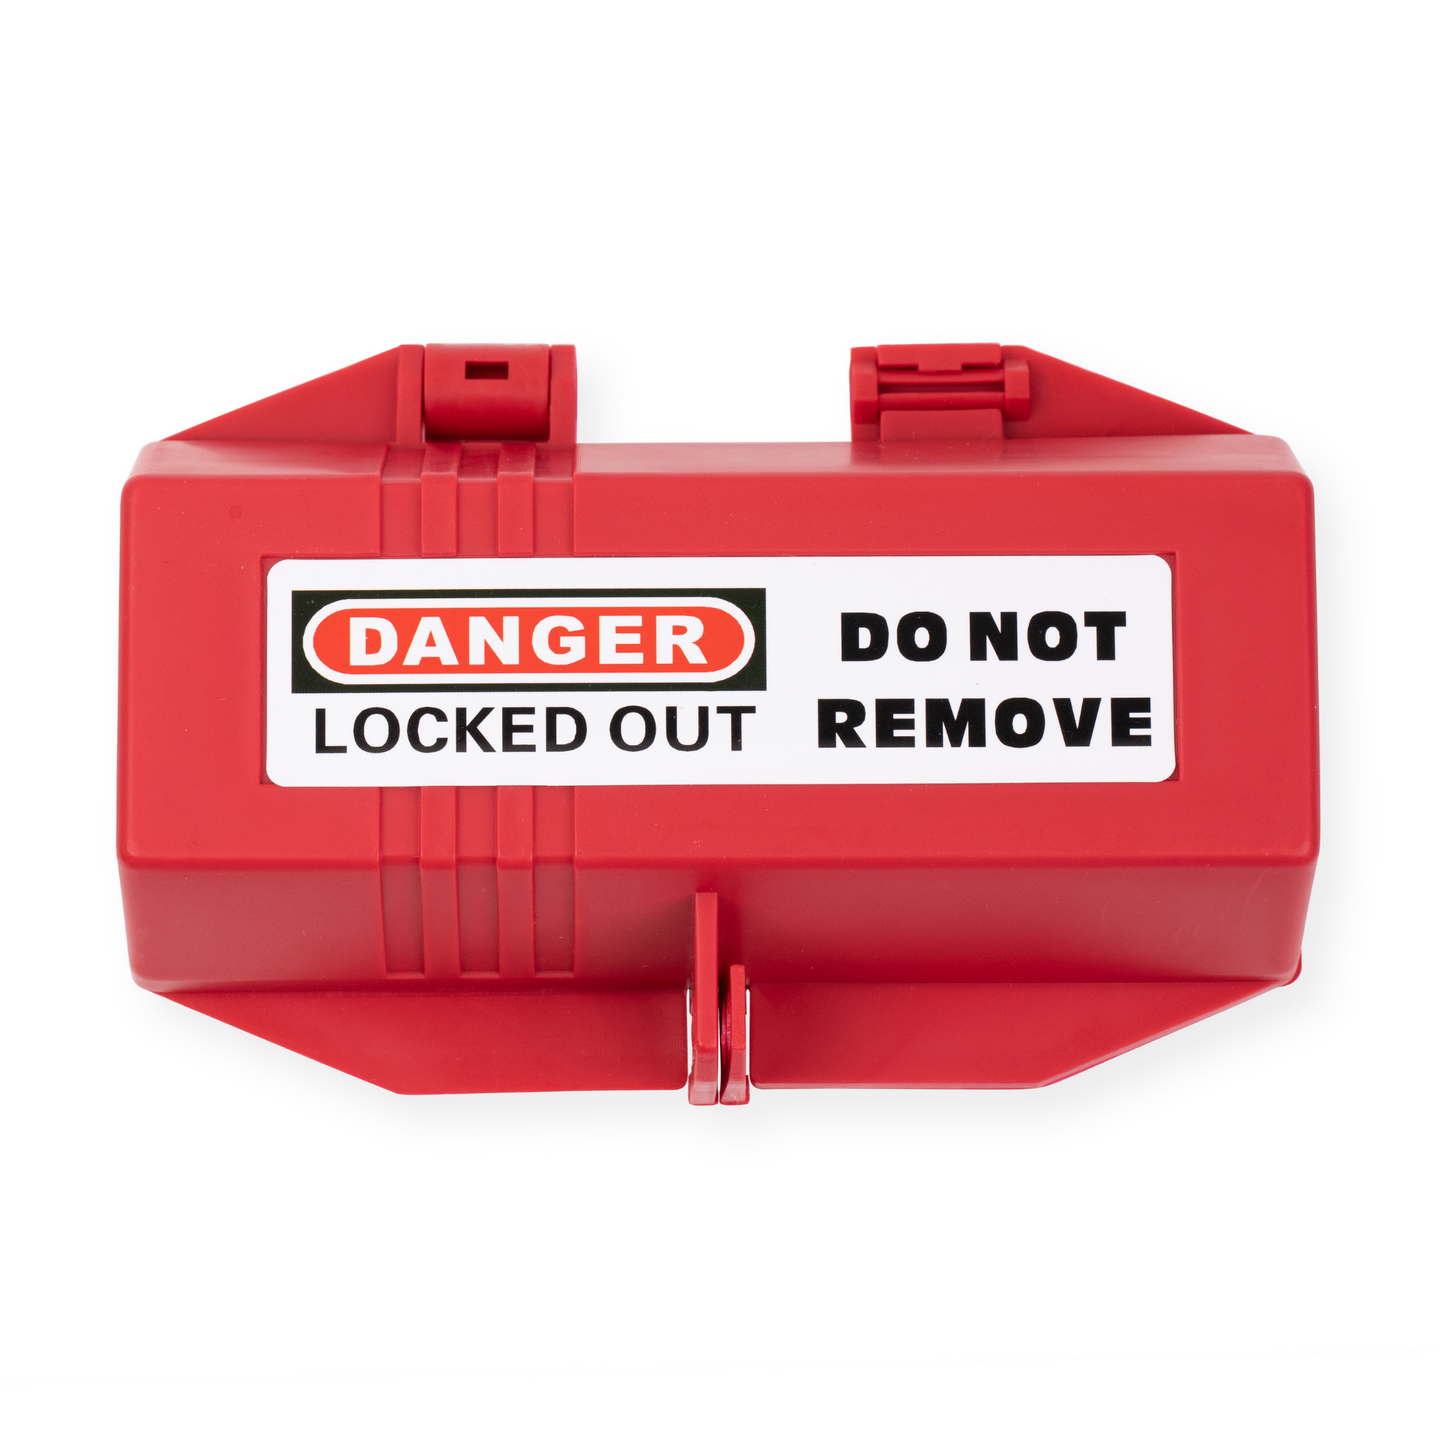 Professional Lockout Tagout Kit – Industrial Loto Kit | TRADESAFE 007